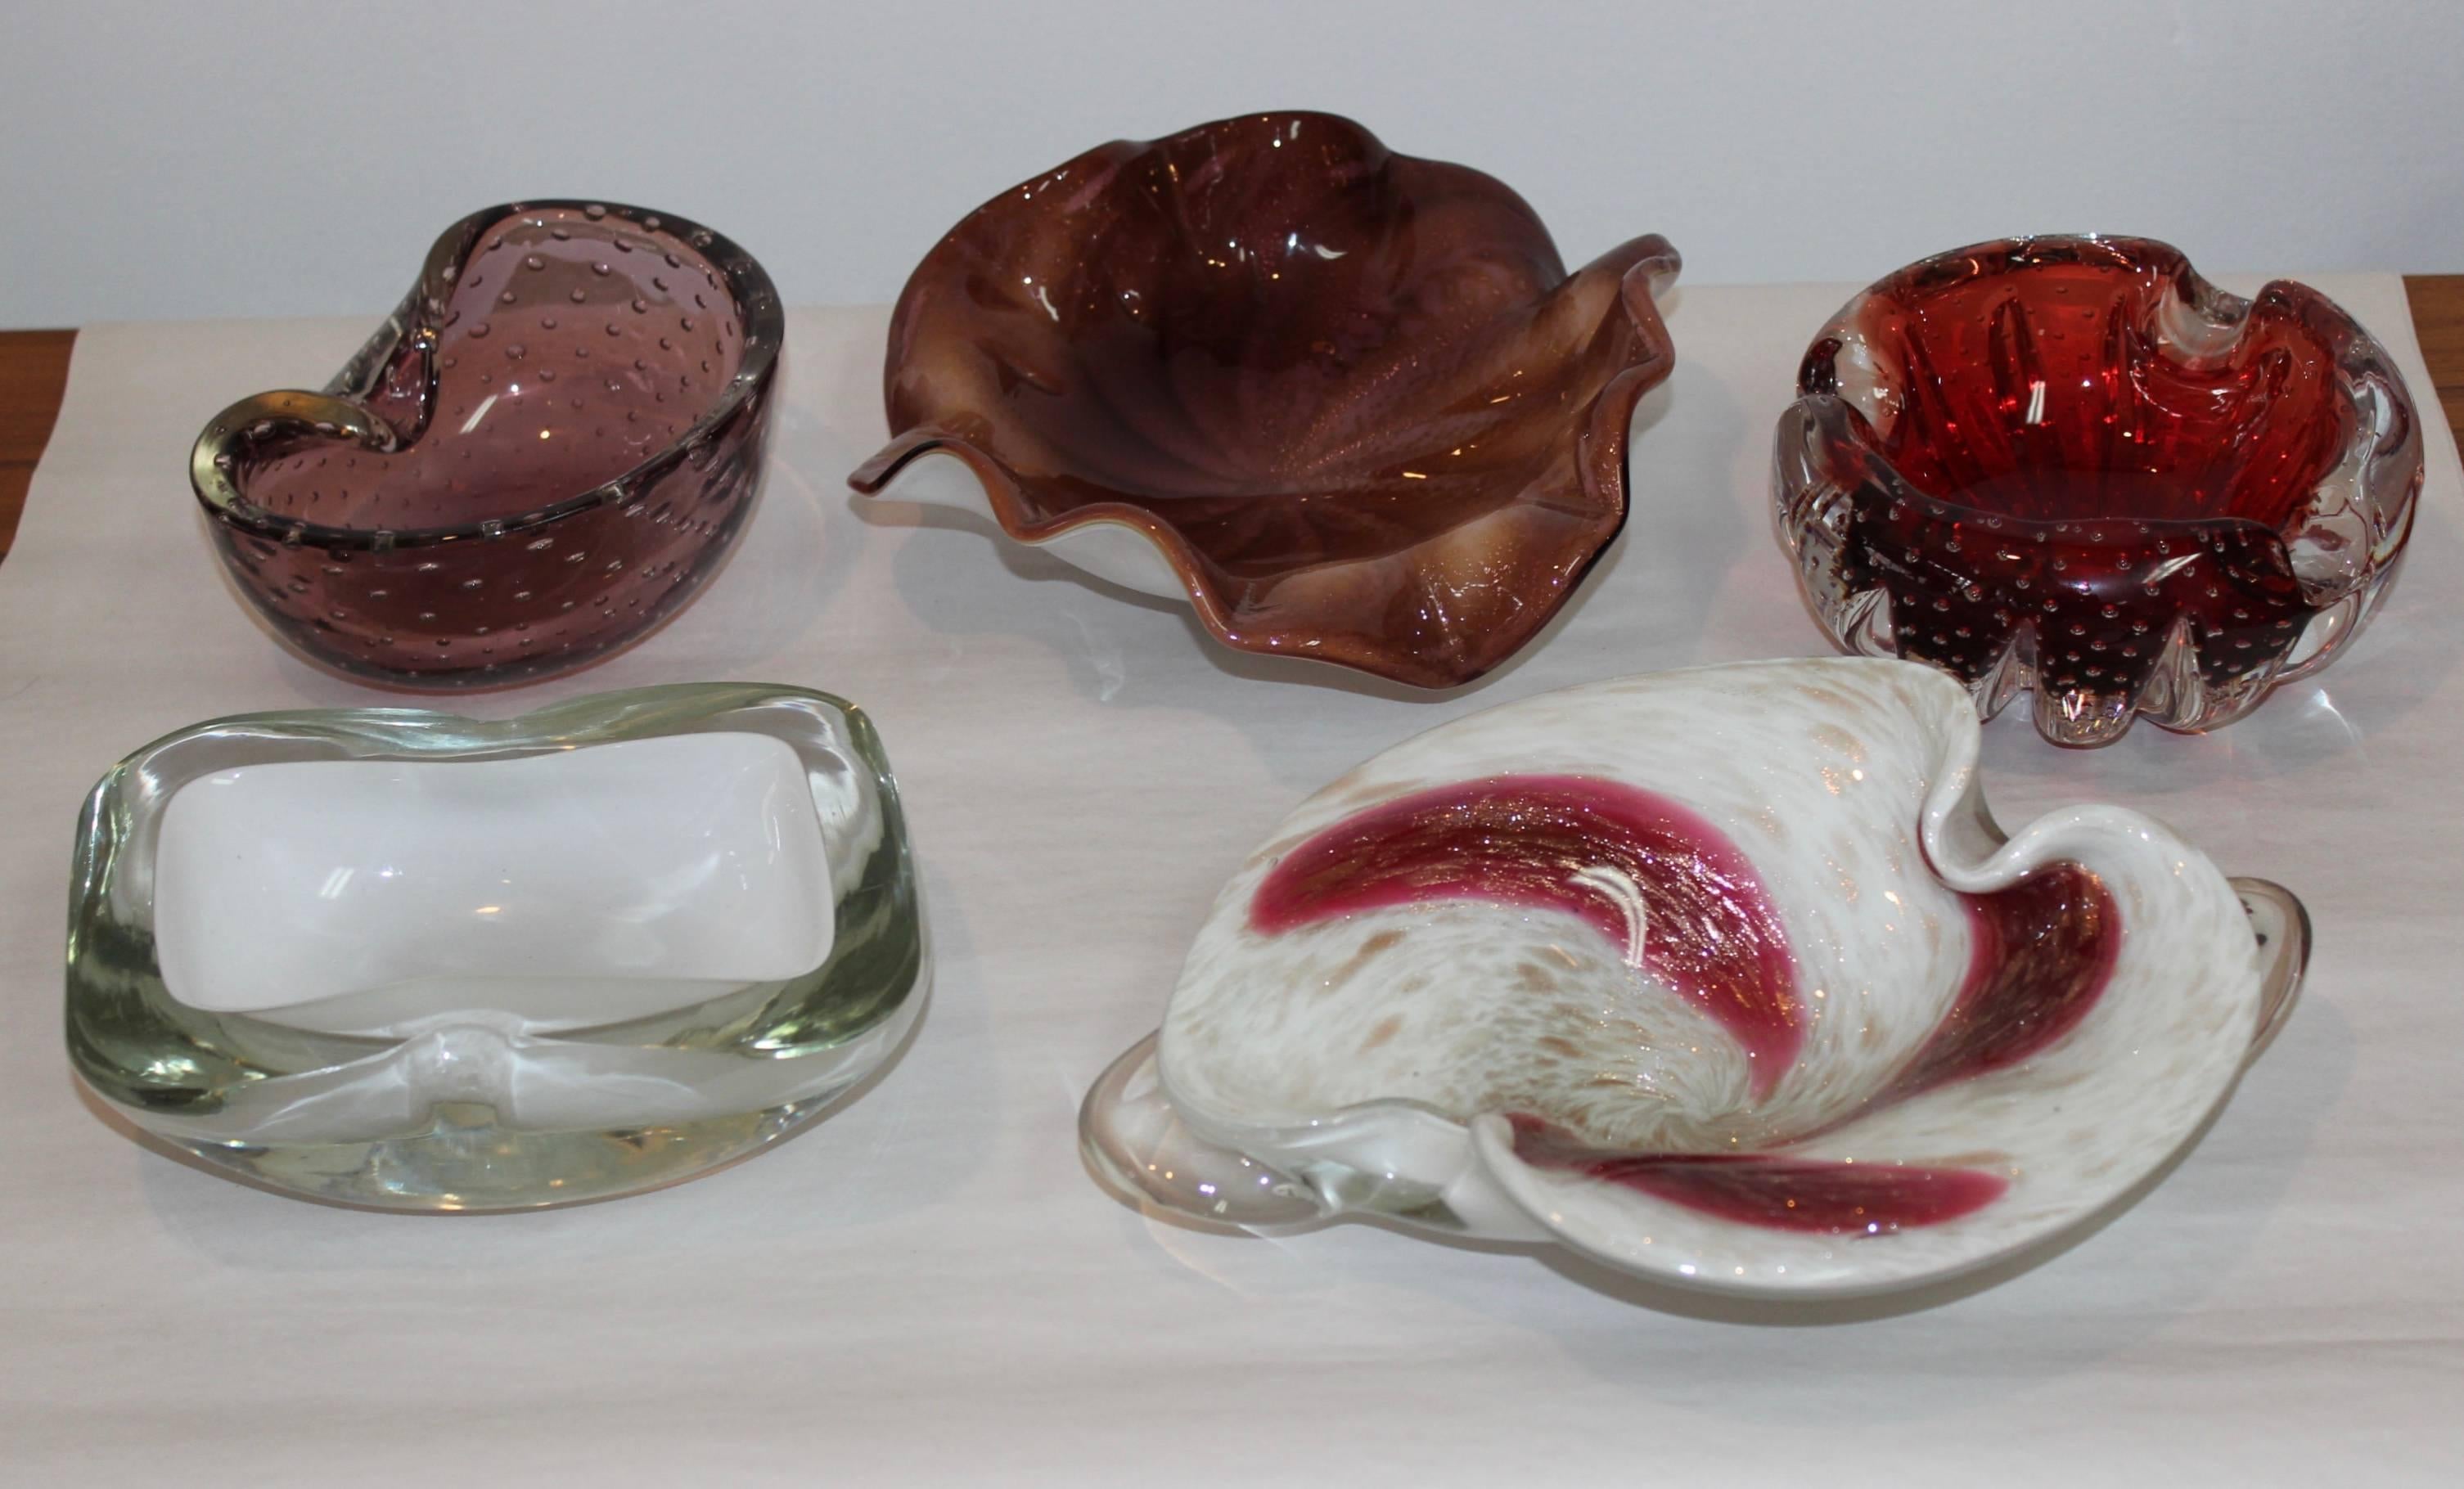 Collection de bols décoratifs en verre de Murano, de style moderne du milieu du siècle.

Le prix est par article, veuillez vérifier les articles disponibles ci-dessous.

Dimensions :

Bol rouge diamètre 6'' hauteur 2 25'' Vendu
Blanc et transparent